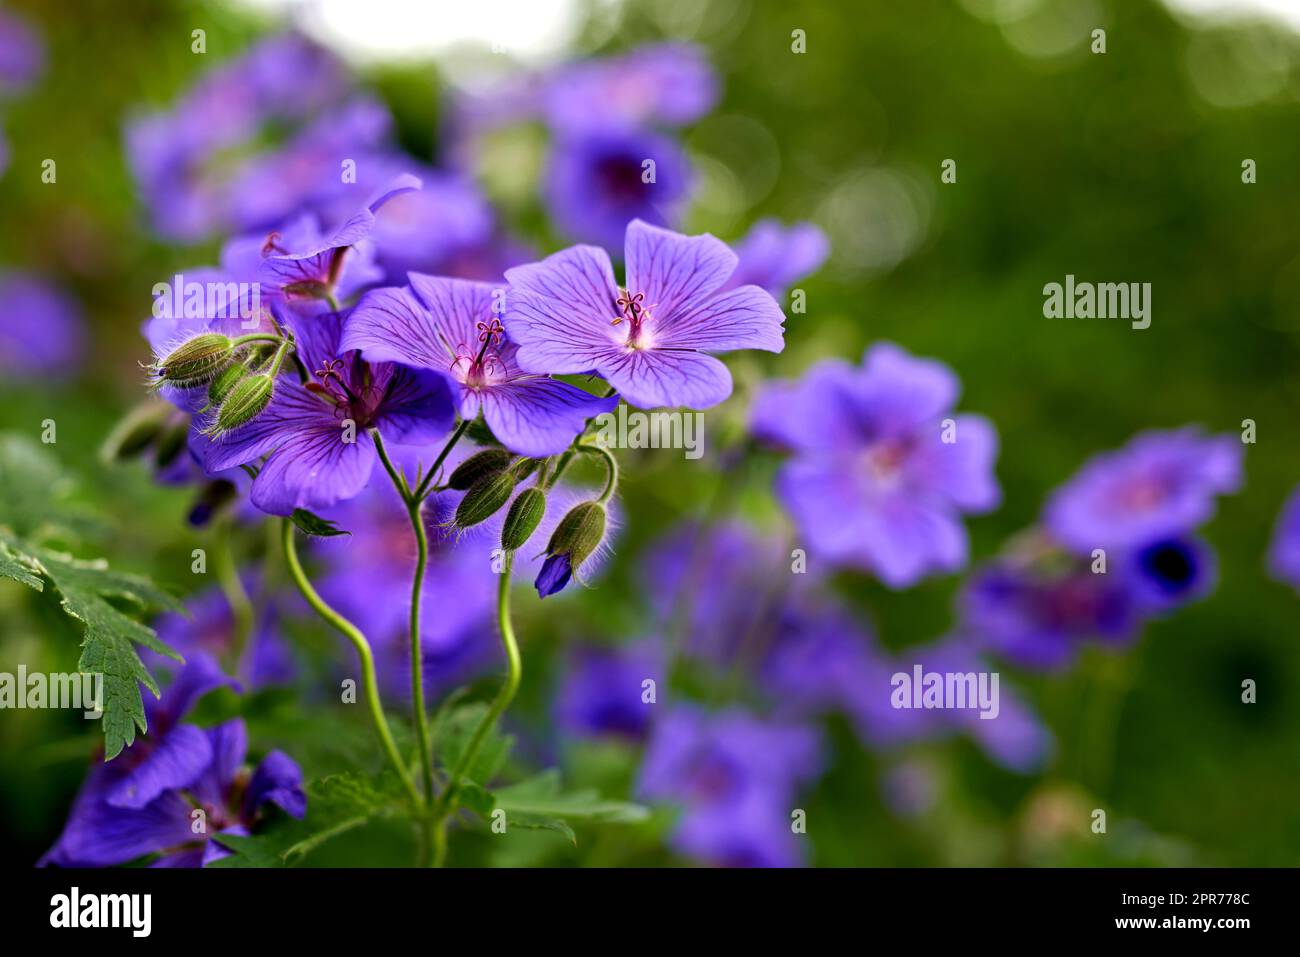 Nahaufnahme einer Geraniumblume in einem ökologischen Garten. Violette Pflanzen blühen im Frühling auf einem grünen Feld mit üppigem Laub. Makroansicht frischer, lebendiger und farbenfroher Blütenblätter draußen Stockfoto